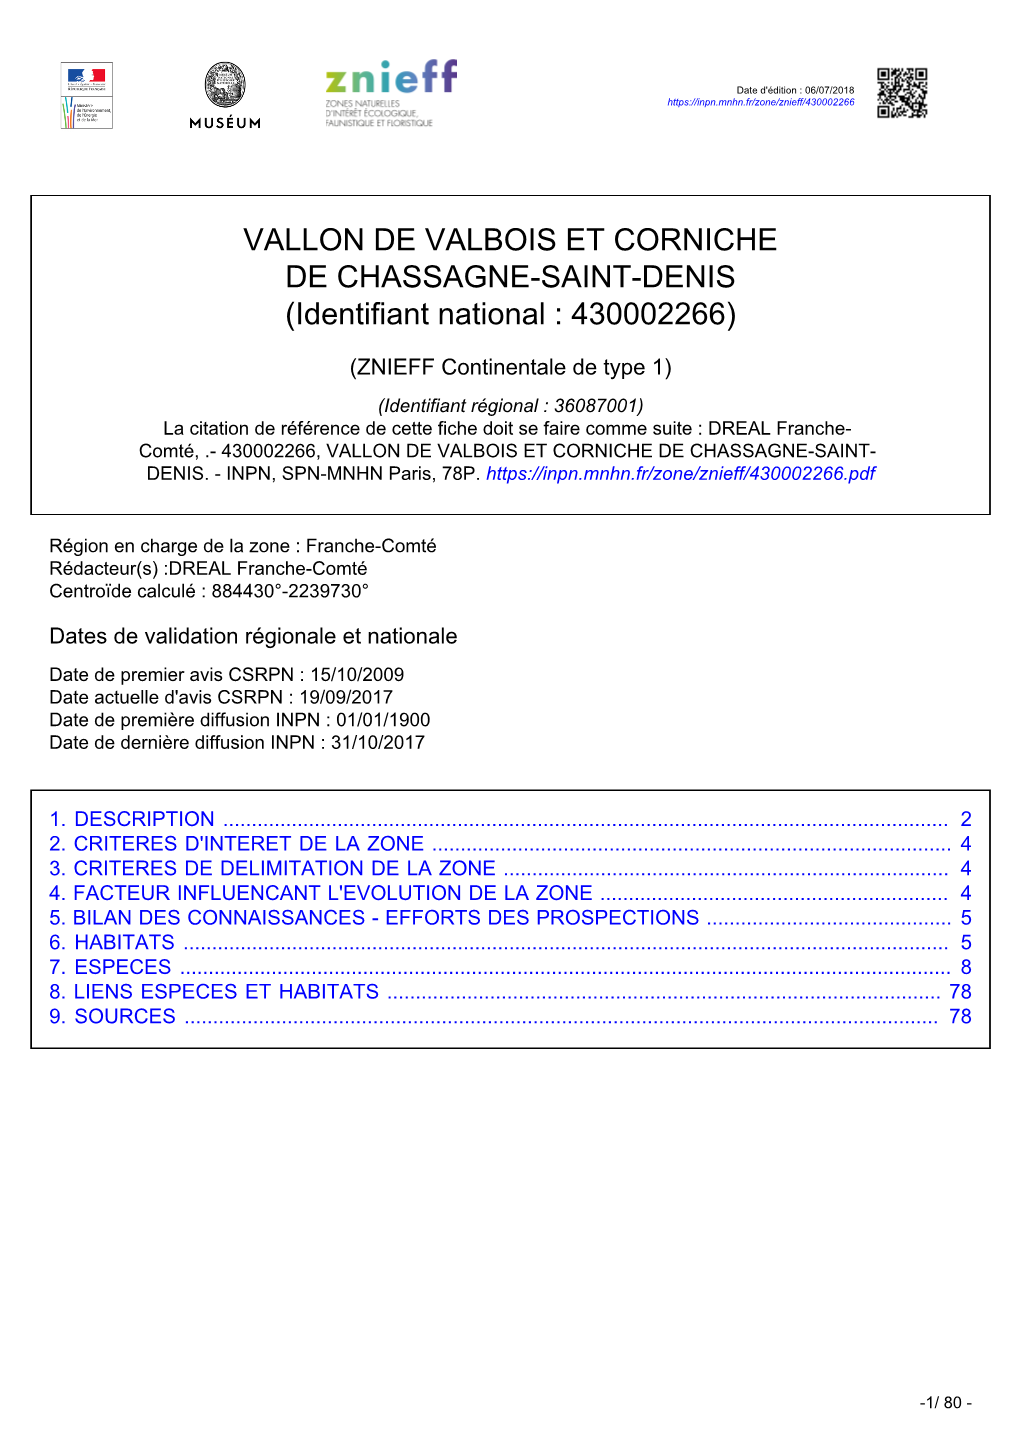 VALLON DE VALBOIS ET CORNICHE DE CHASSAGNE-SAINT-DENIS (Identifiant National : 430002266)